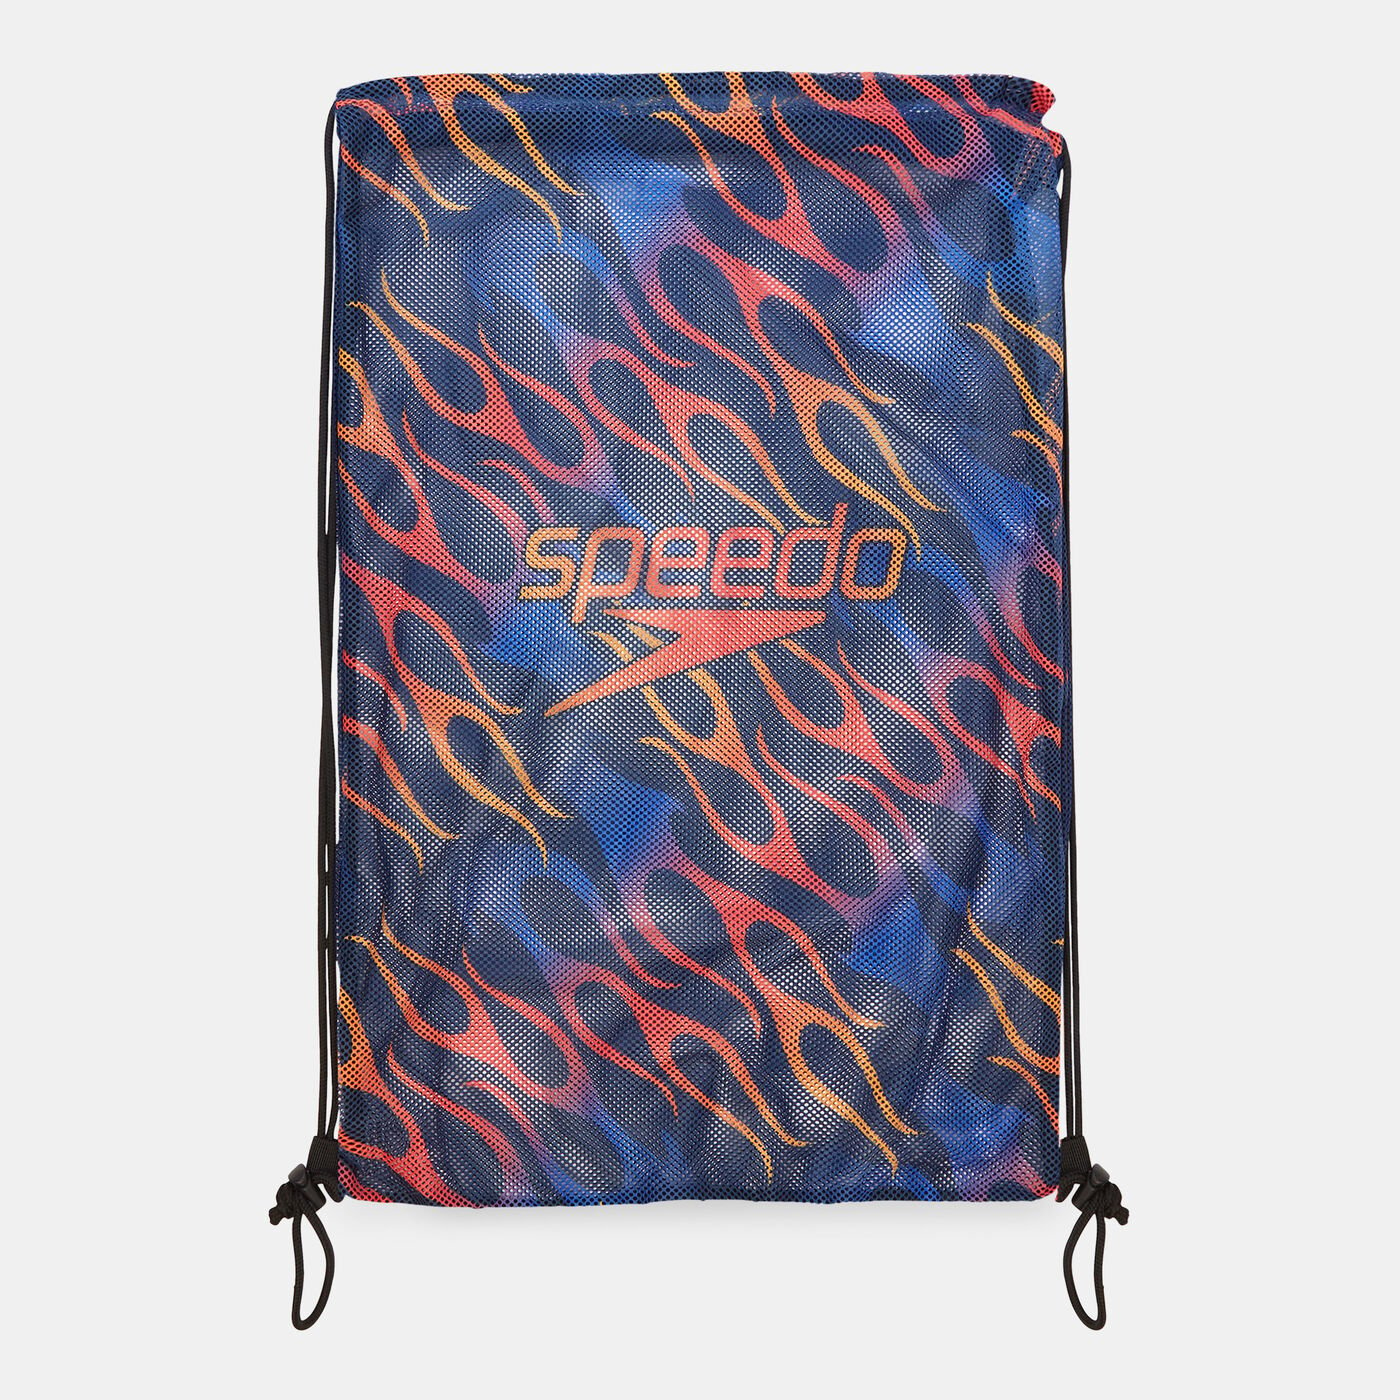 Printed Mesh Swimming Bag